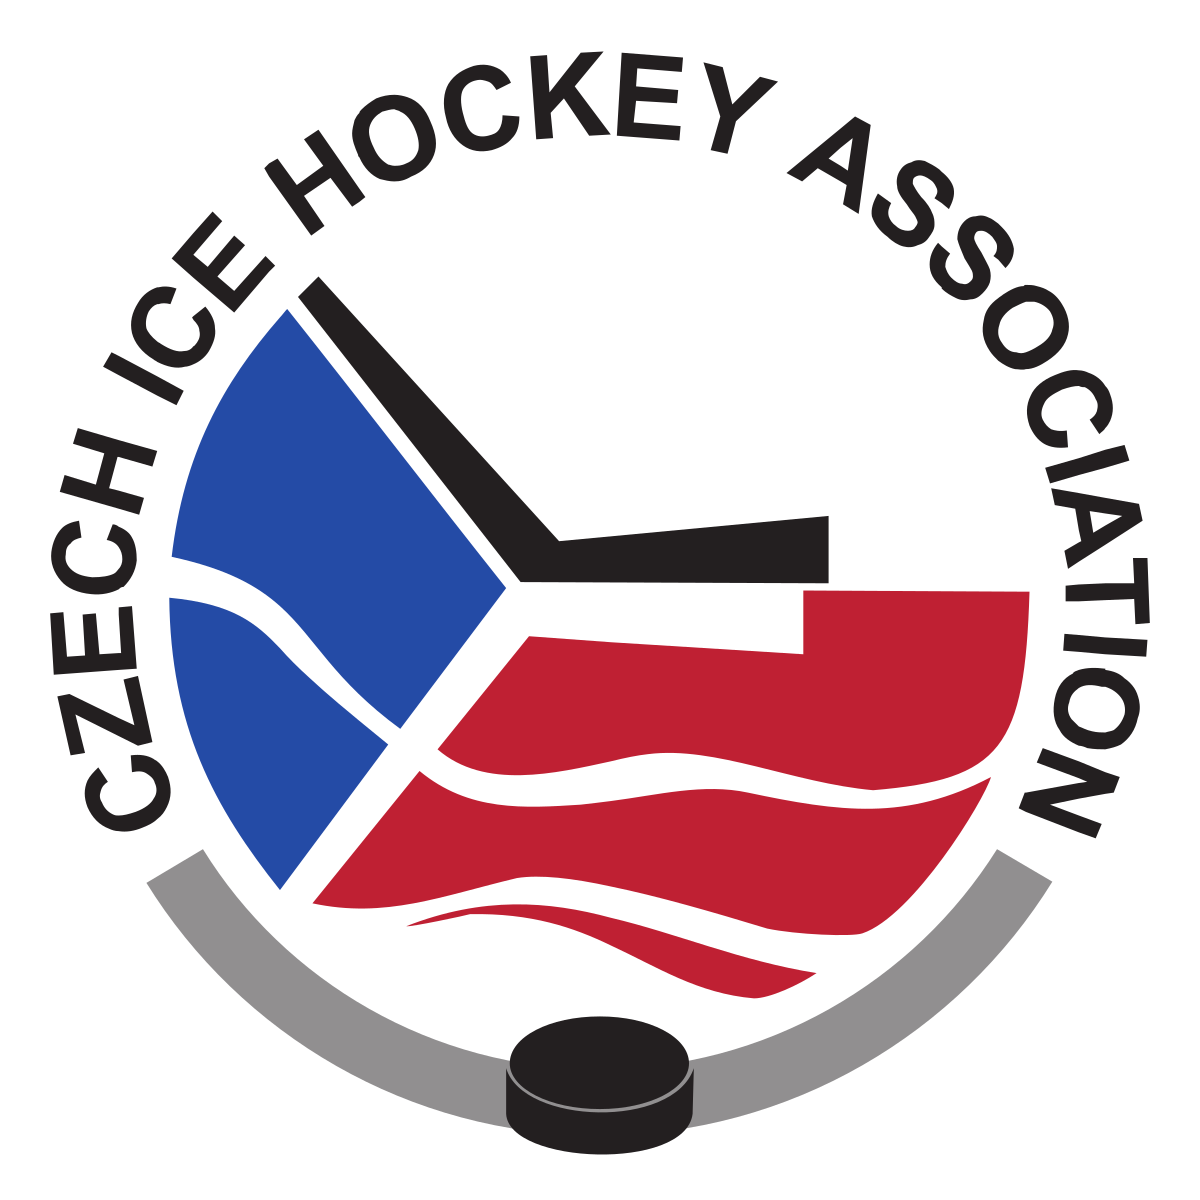 Czech Ice Hockey Association (1200x1200)